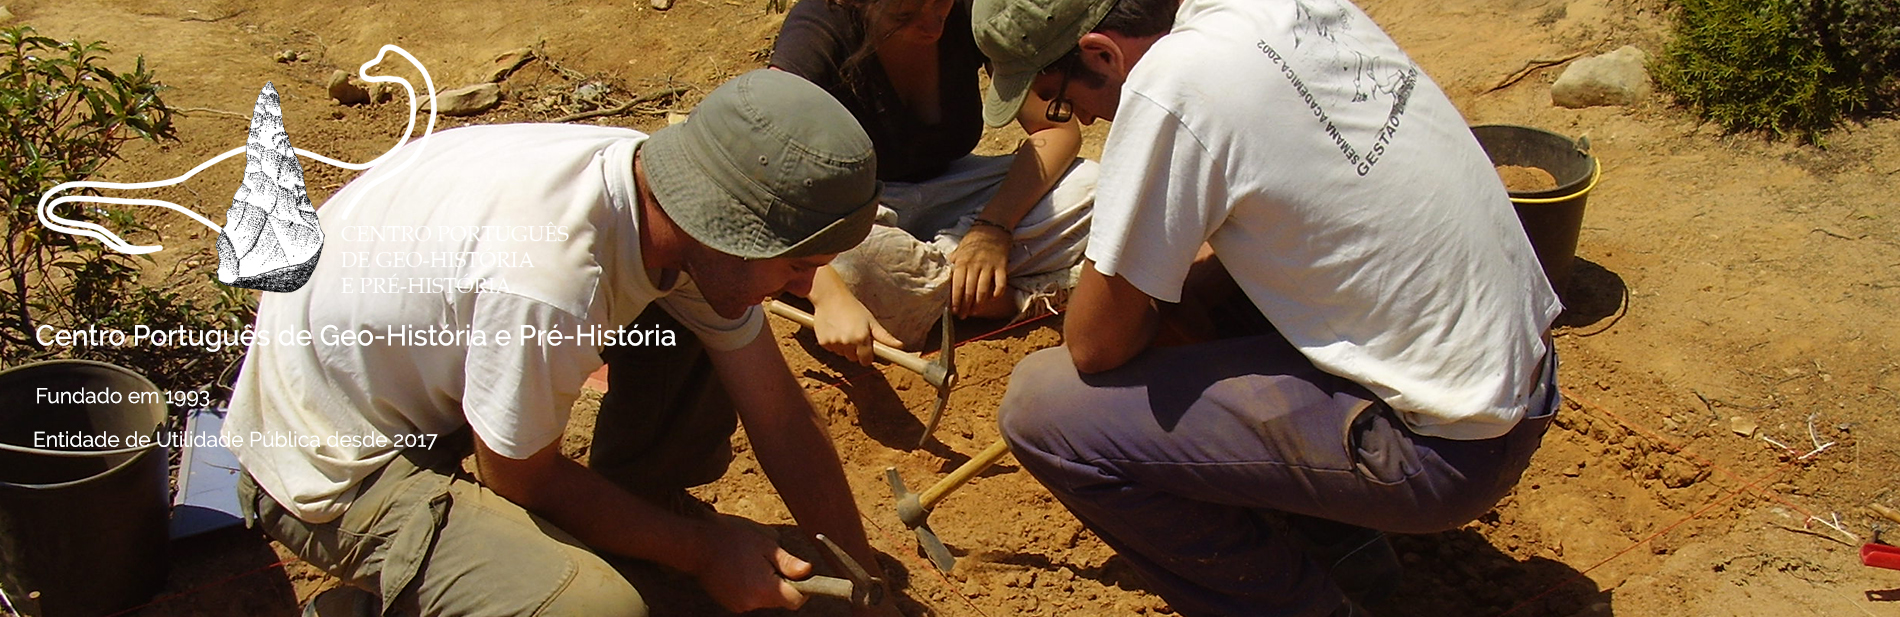 Trabalhos de Arqueologia - Cabo Espichel